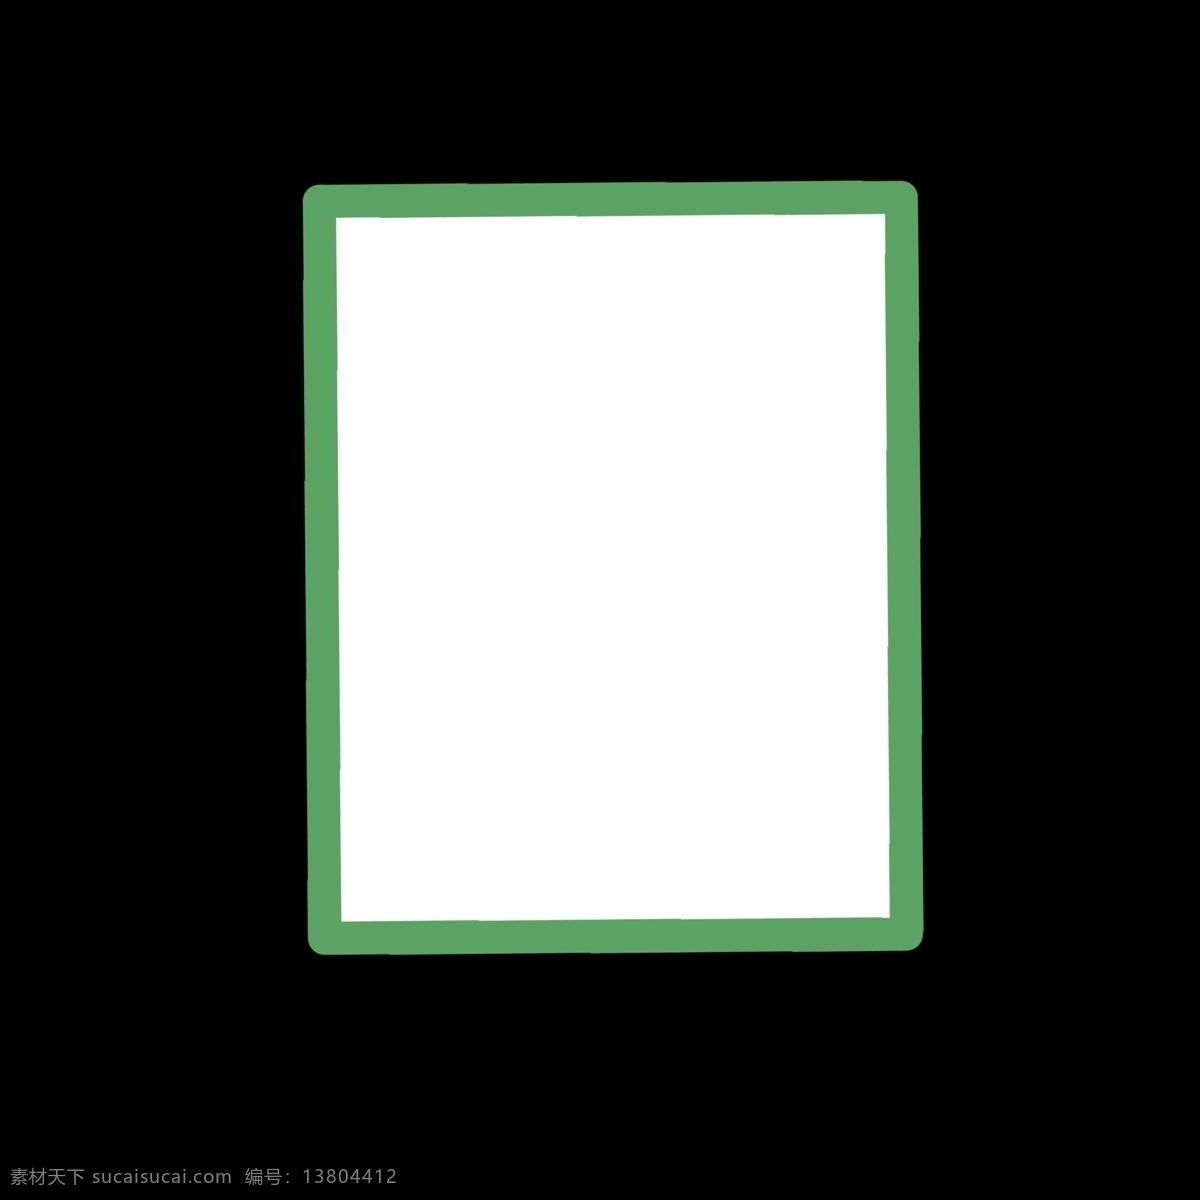 绿色 框 白底 小 图标 冷色 白色底色 图案 几何形体 形状 卡通 简洁 简单 简约 ppt可用 网络 视频图标